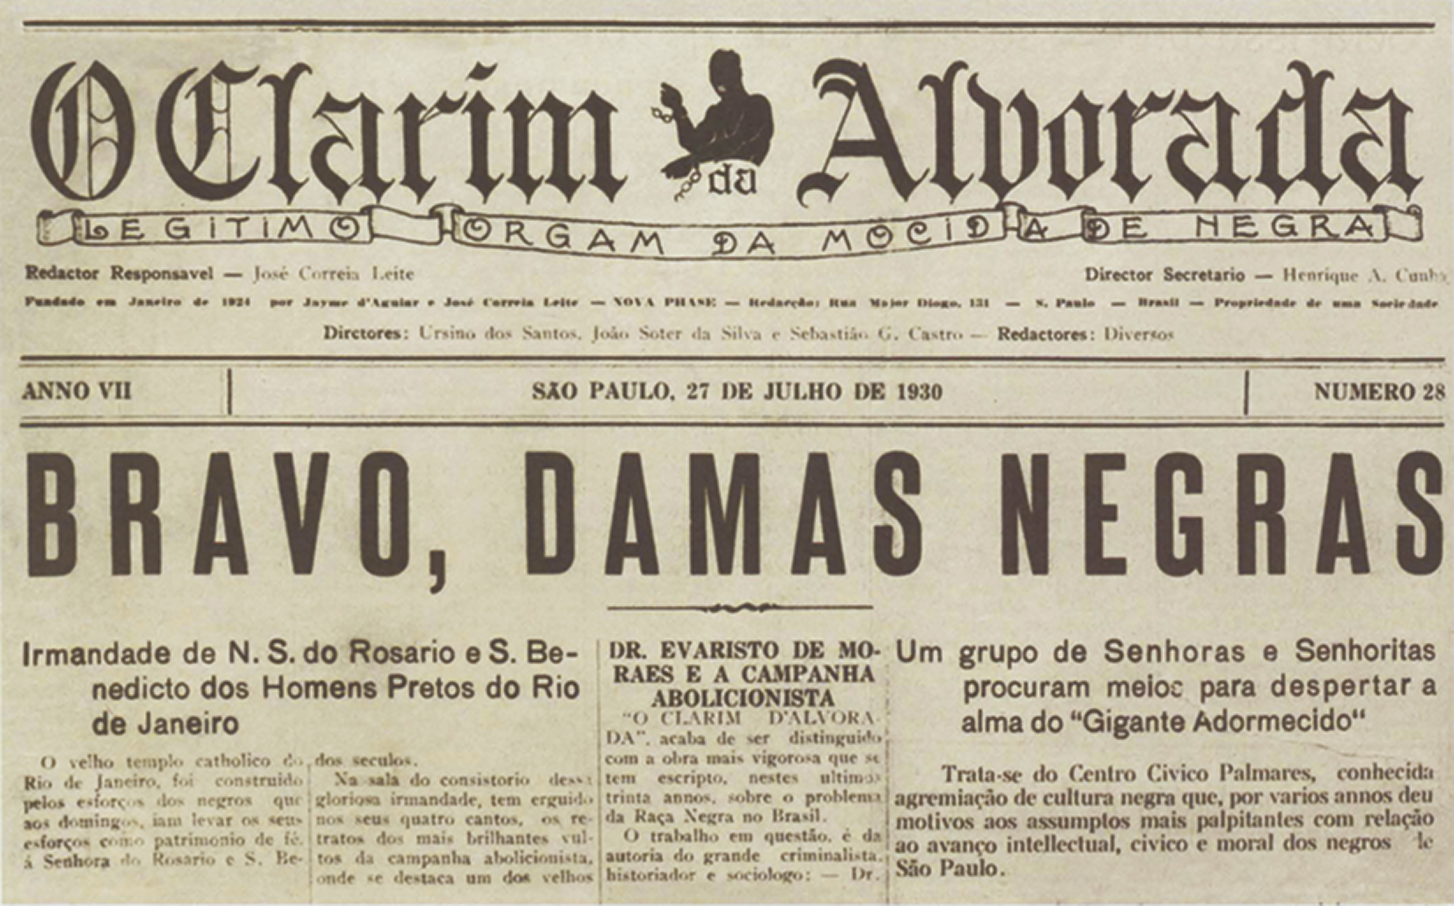 Capa do jornal. Na parte superior, o nome do jornal: O CLARIM DA ALVORADA. Abaixo, manchete com o texto: BRAVO, DAMAS NEGRAS.